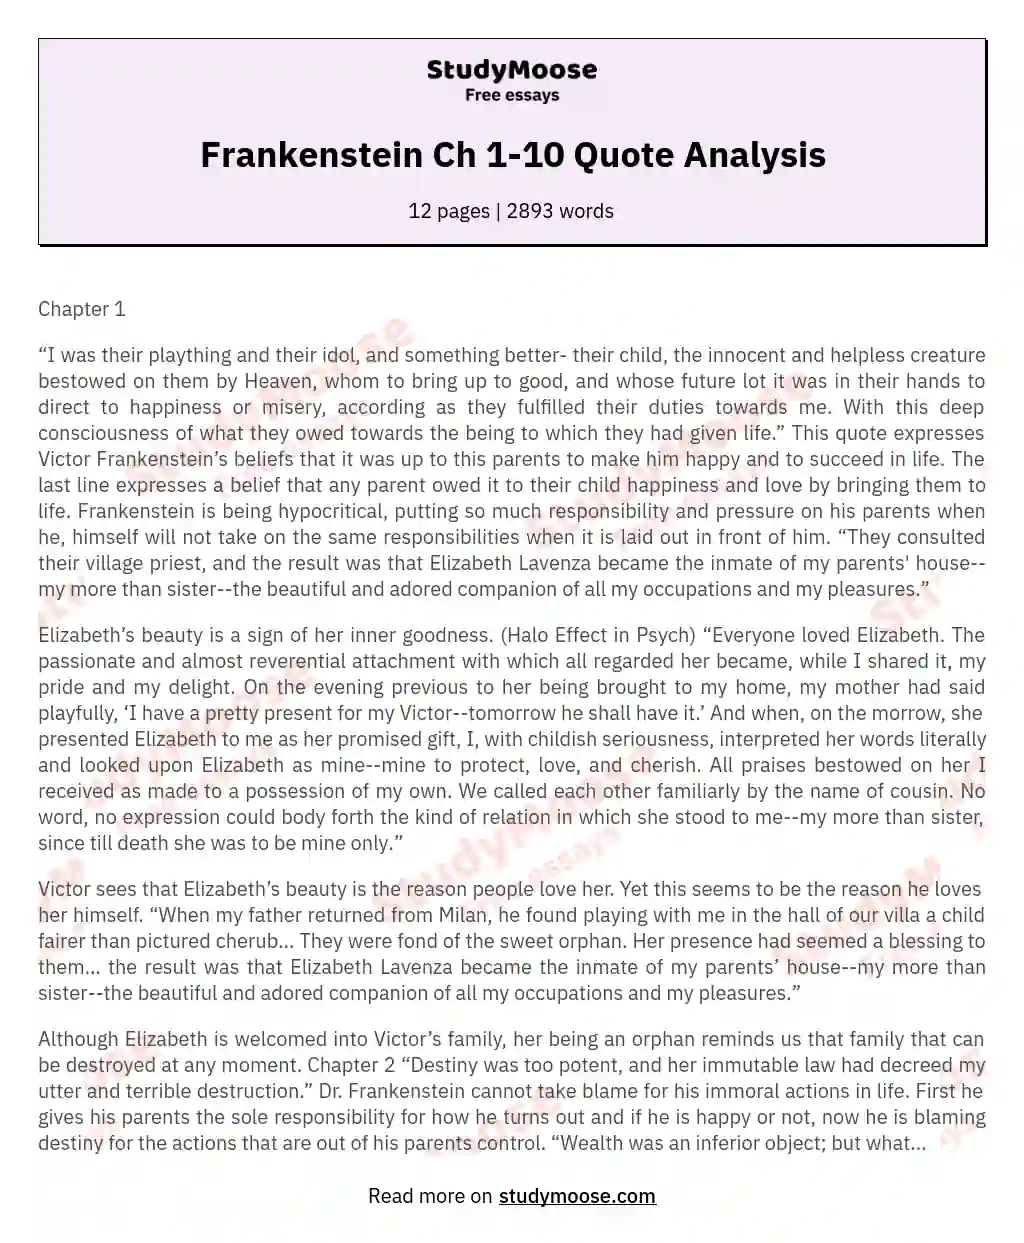 Frankenstein Ch 1-10 Quote Analysis essay